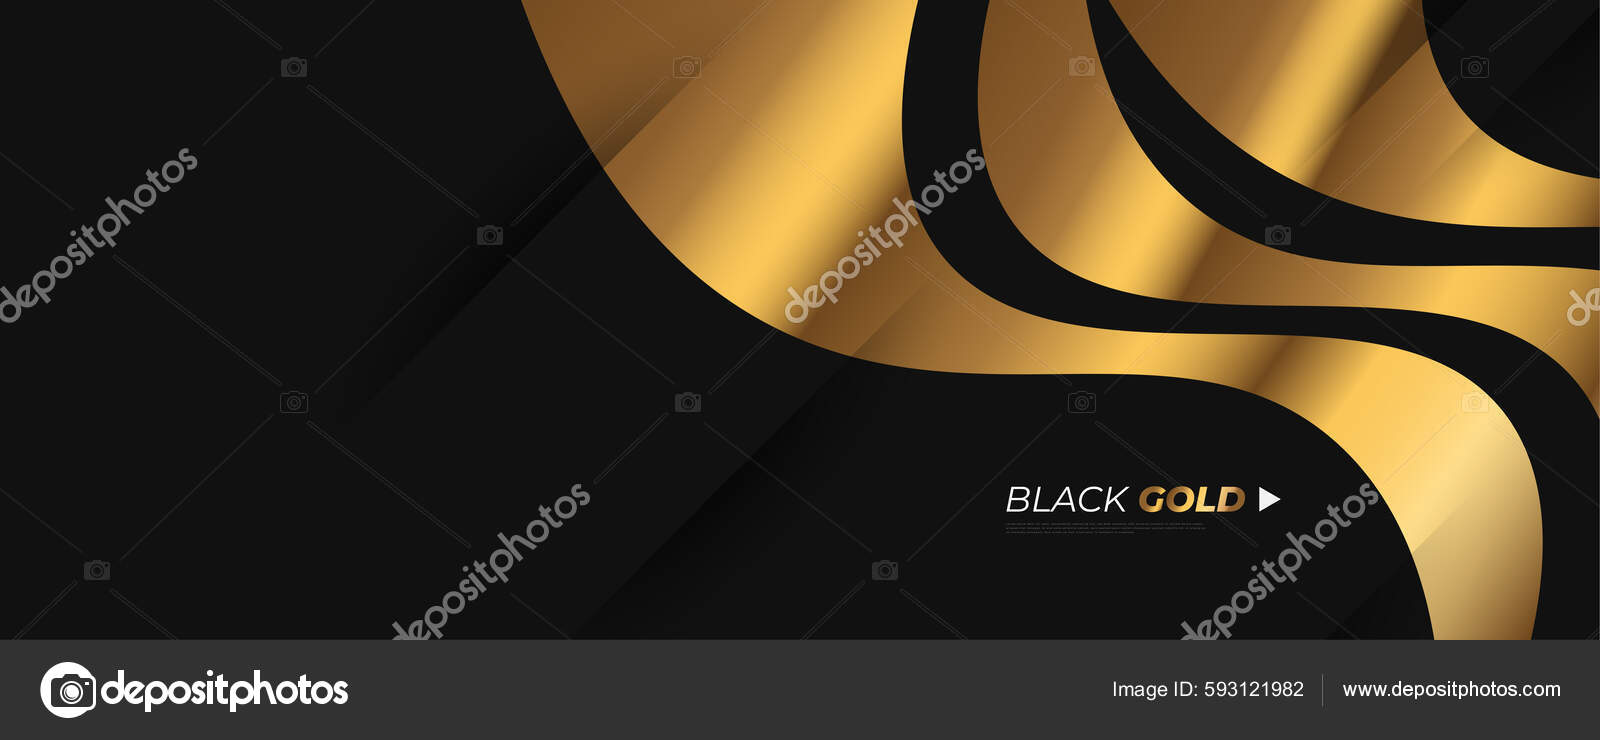 Download Sparkling gold on an elegant black background